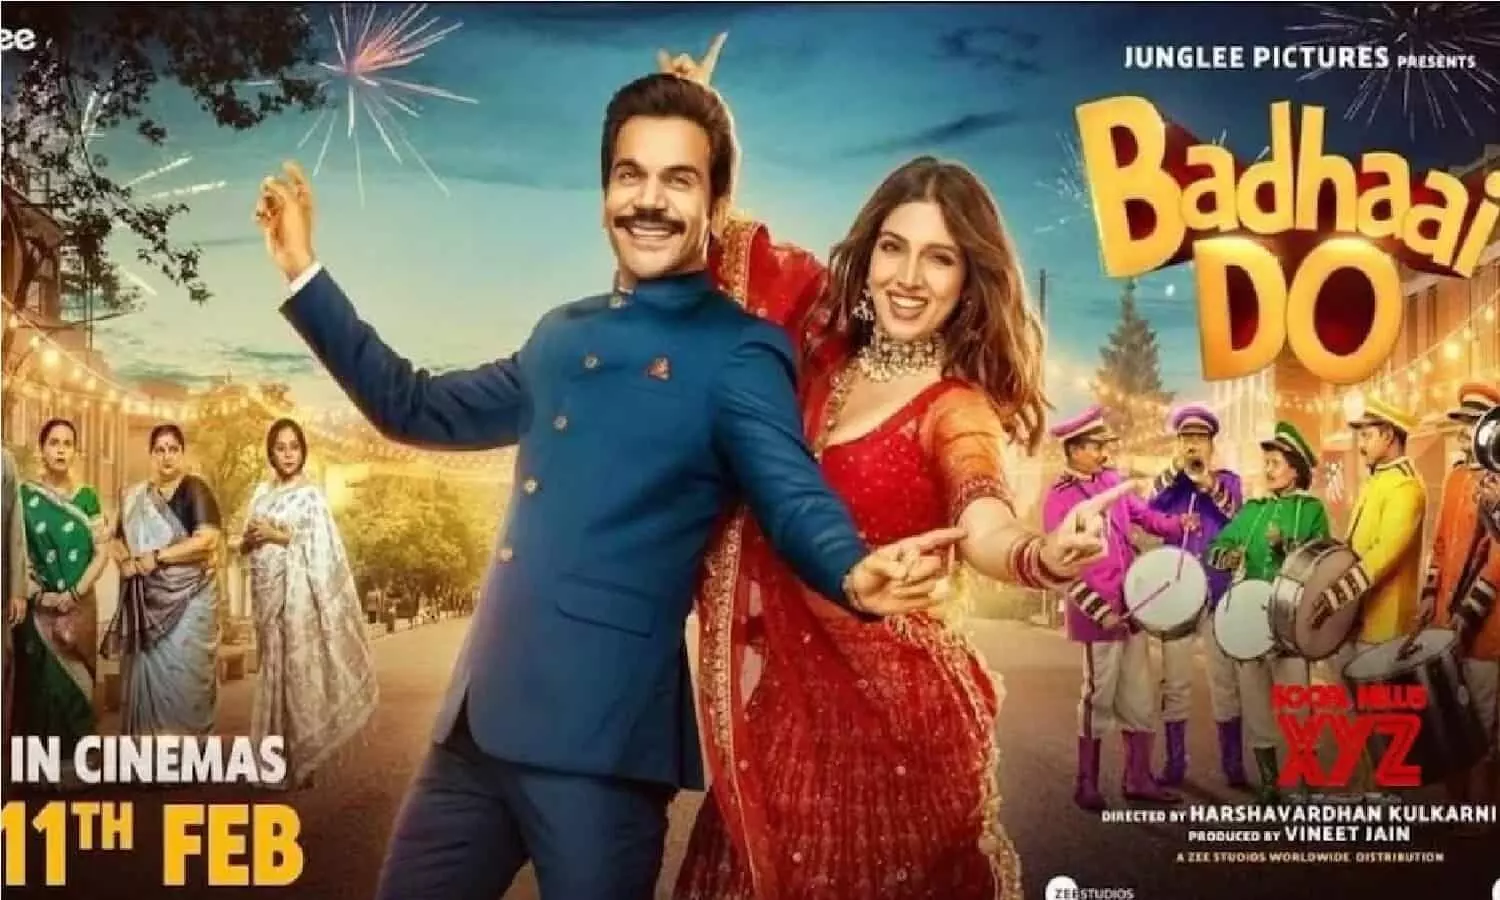 फिल्म Badhai Do देखने जा रहे है तो ये खबर आपको चौका सकती है, जानिए!